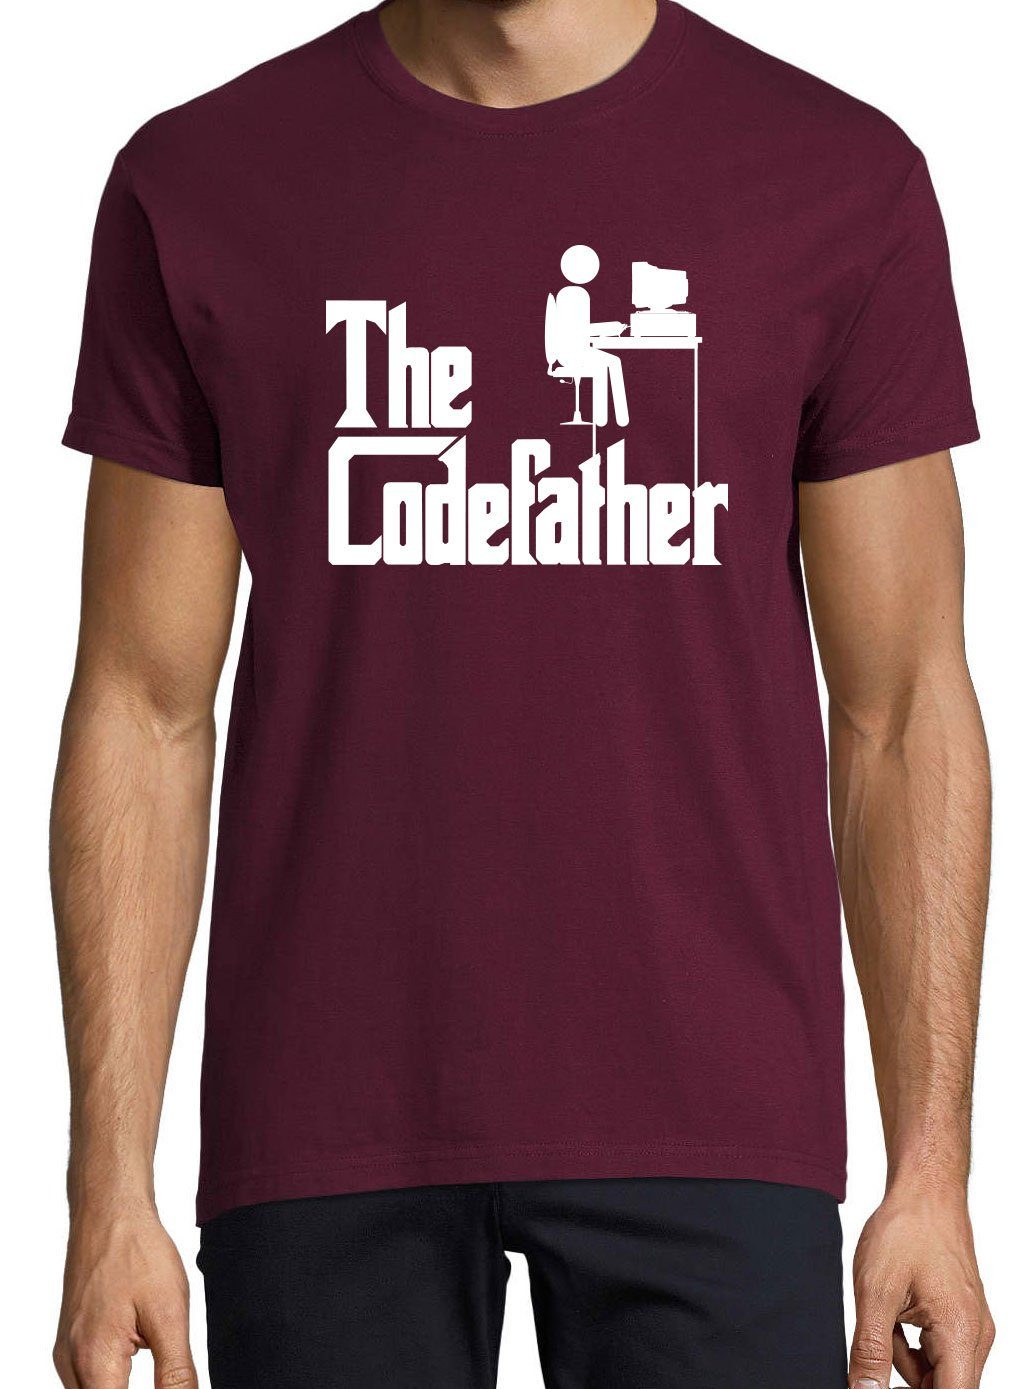 Youth lustigem Herren Designz T-Shirt Codefather Burgund mit The Frontprint T-Shirt